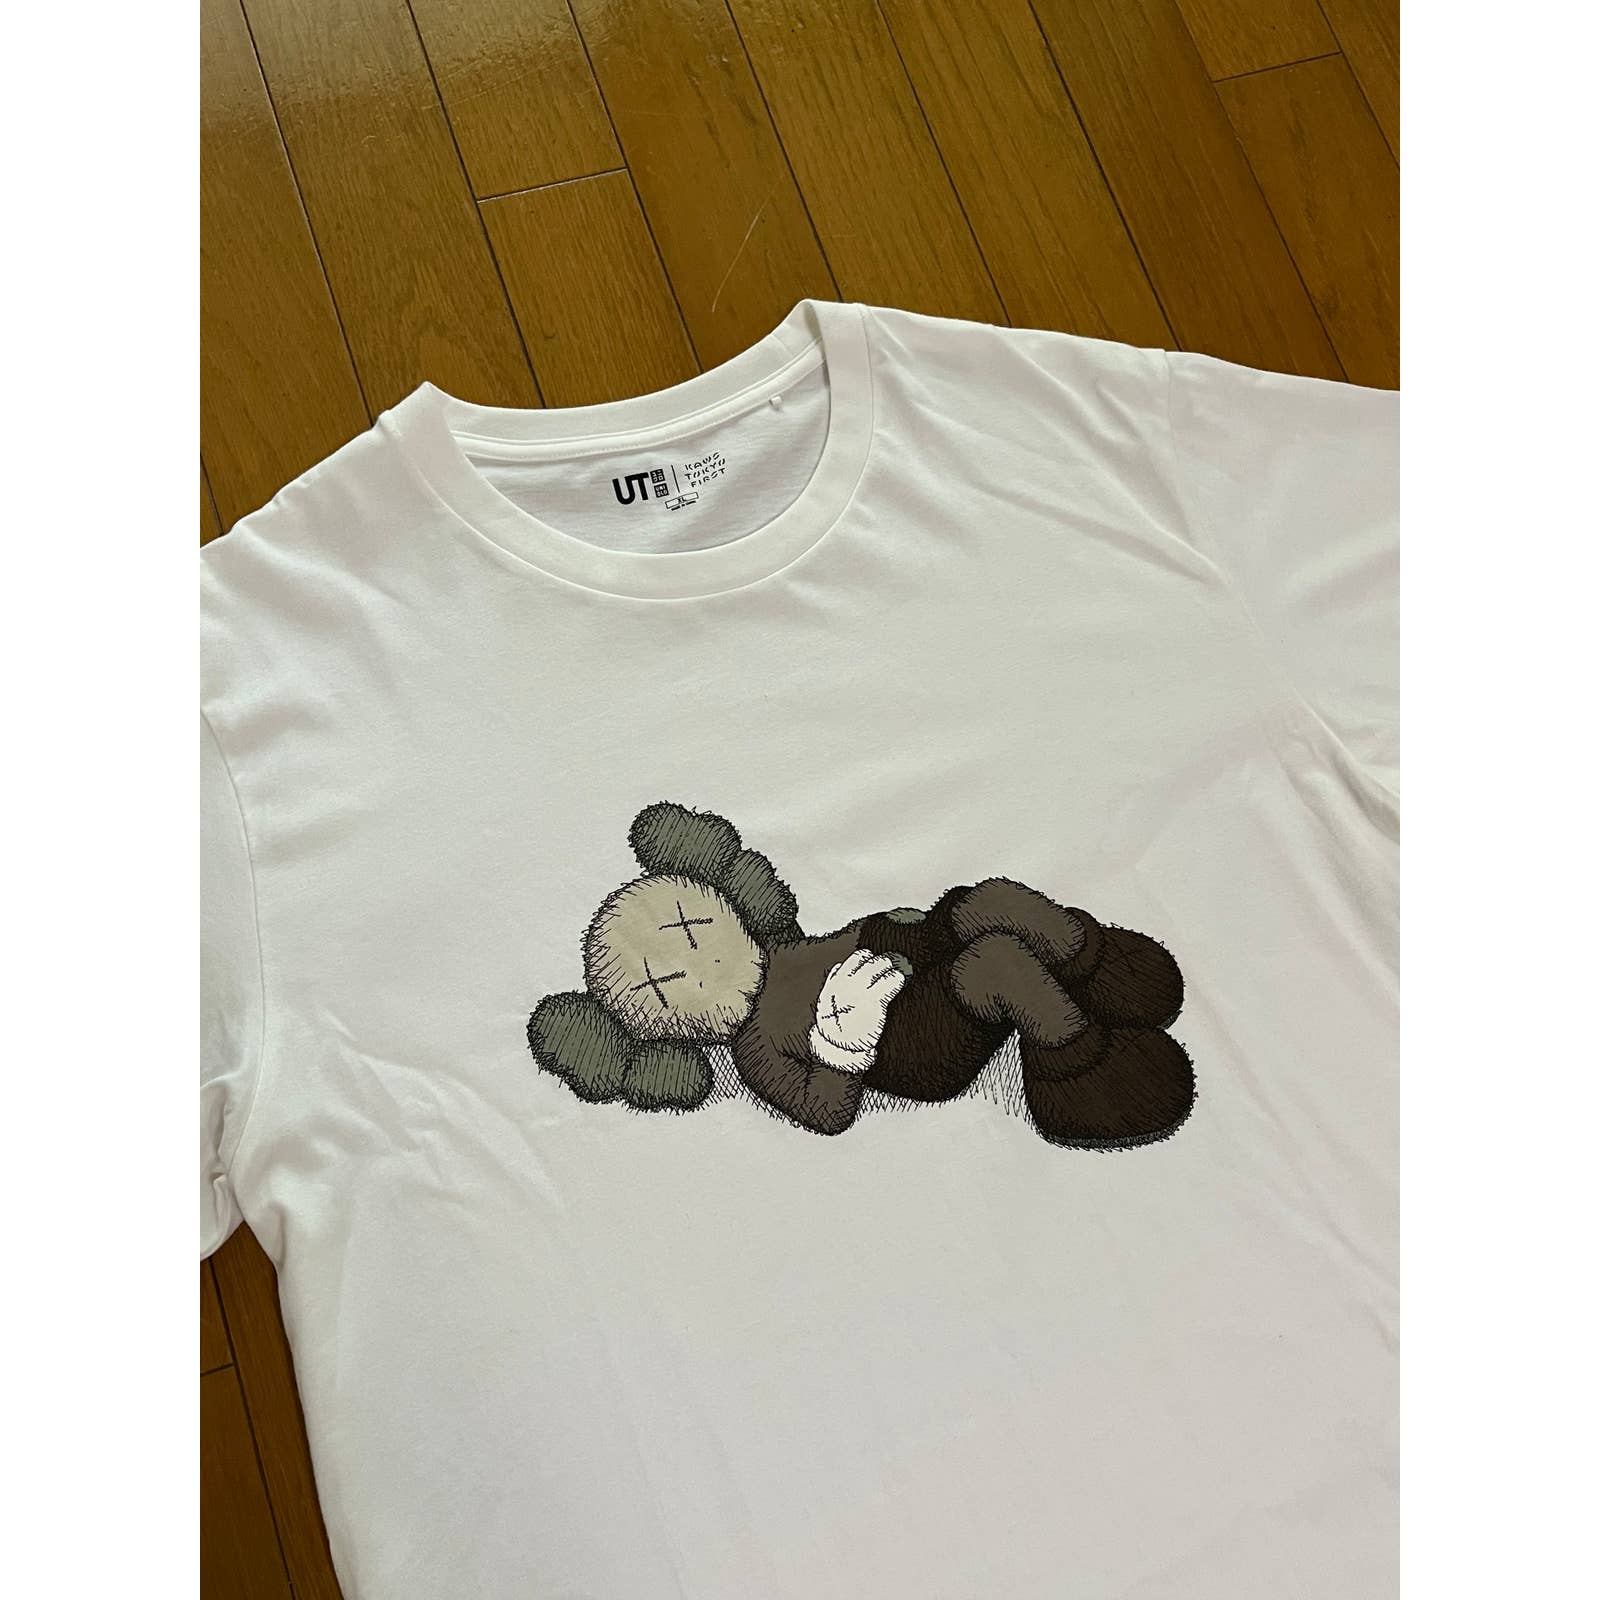 Uniqlo x Kaws Tokyo First Mens Fashion Tops  Sets Tshirts  Polo  Shirts on Carousell